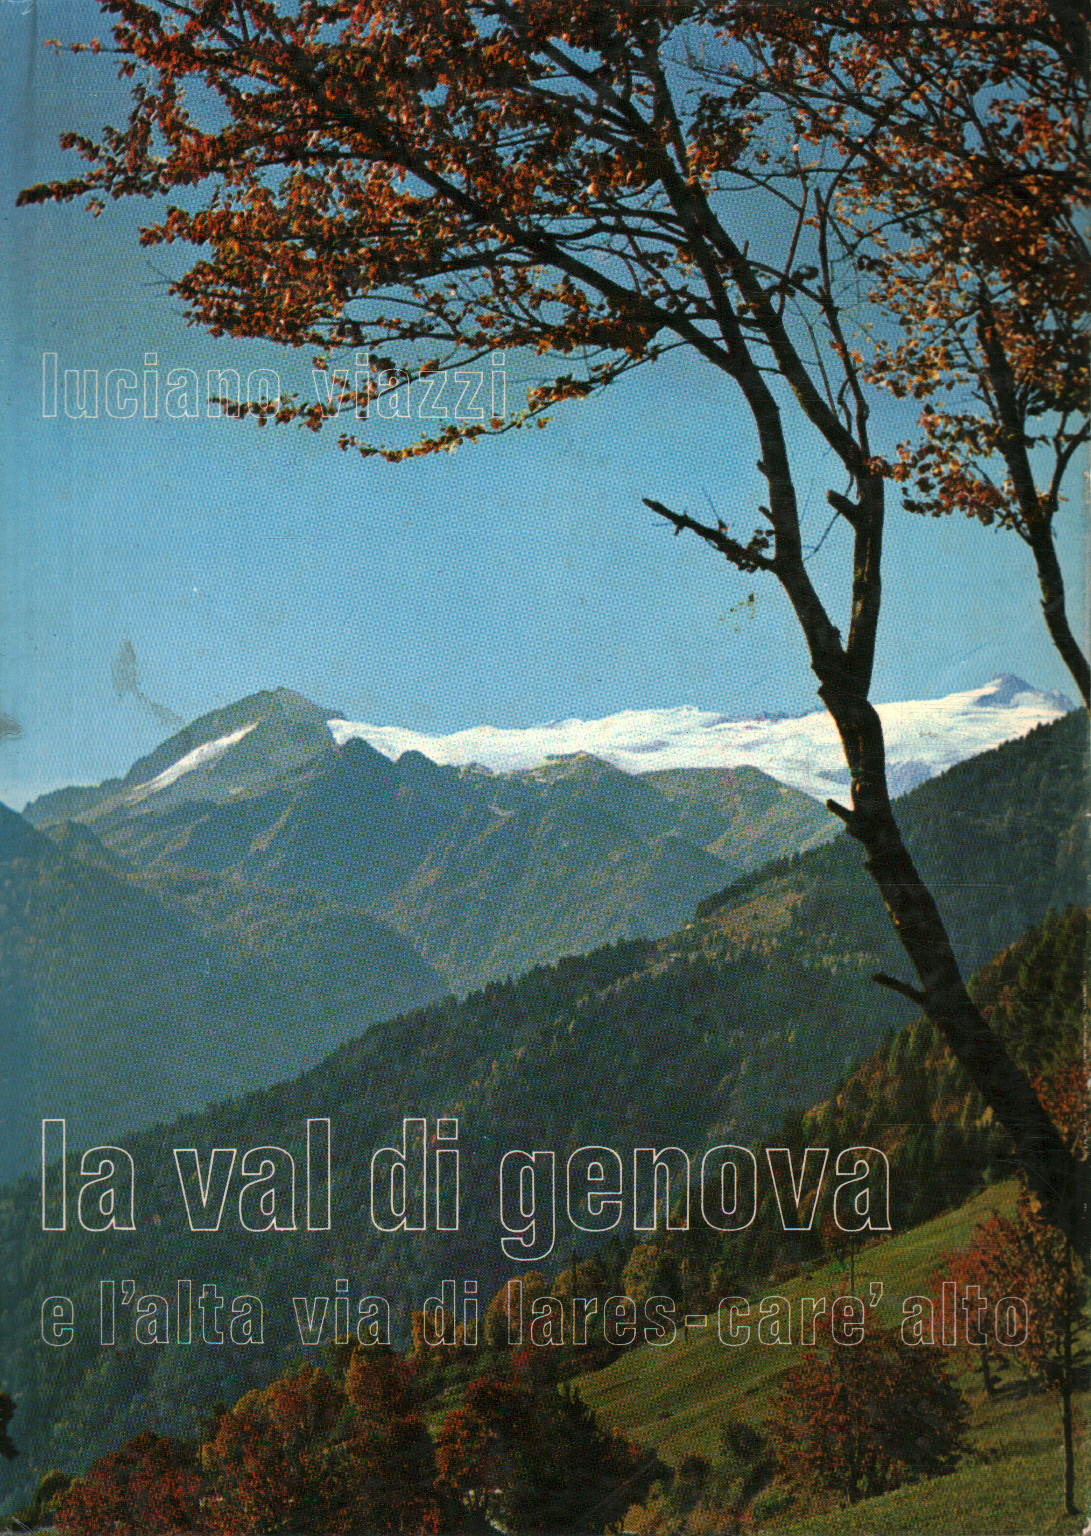 The Val di Genova and the Alta V